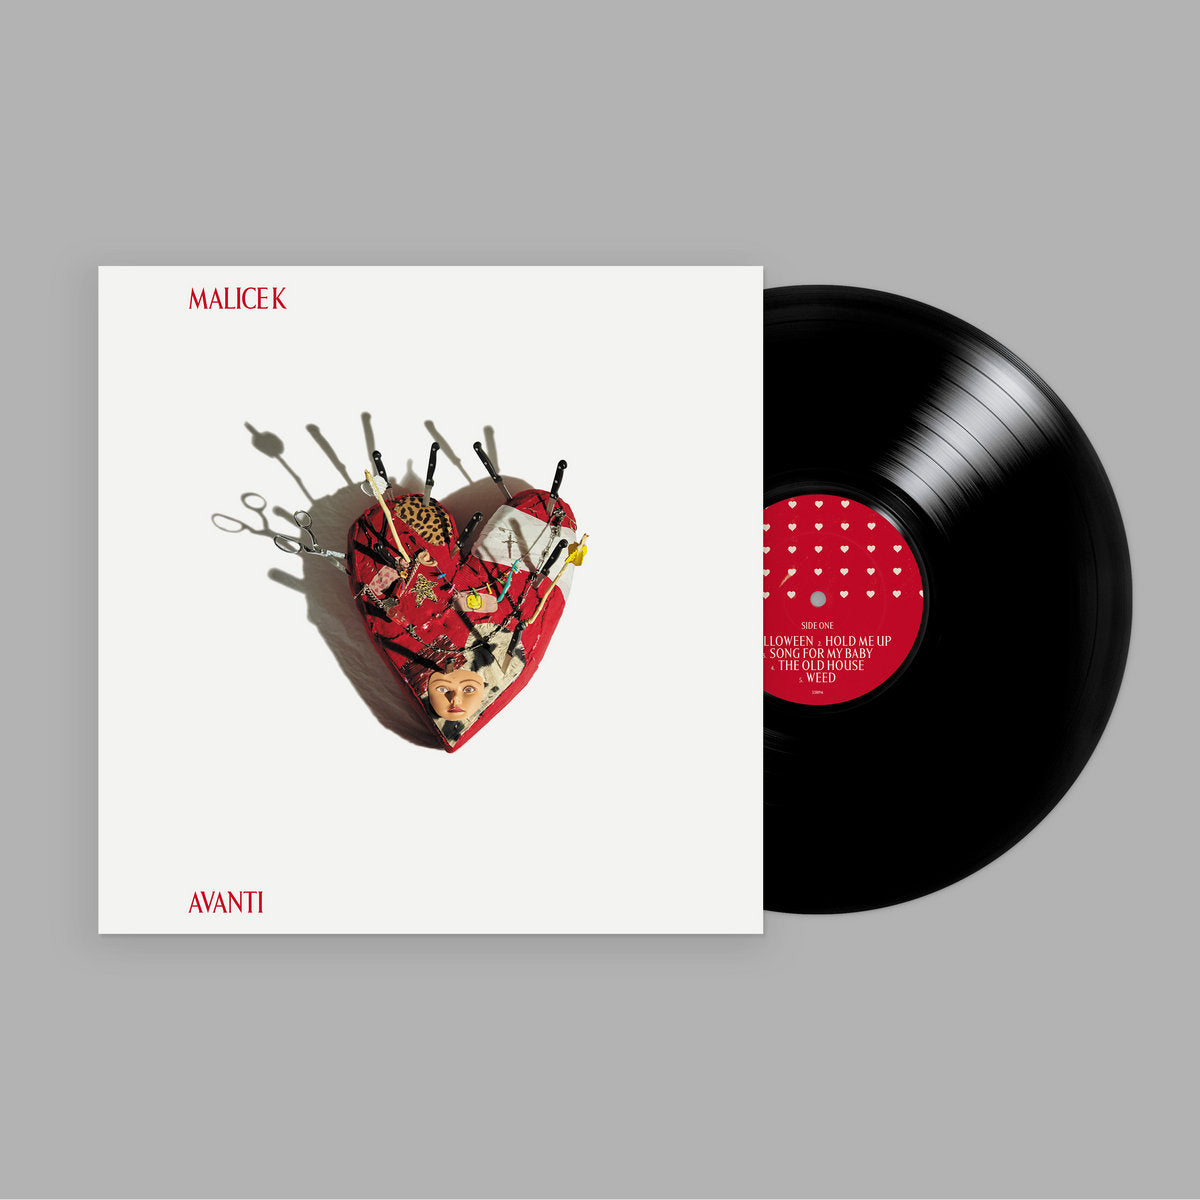 Malice K - AVANTI: Vinyl LP